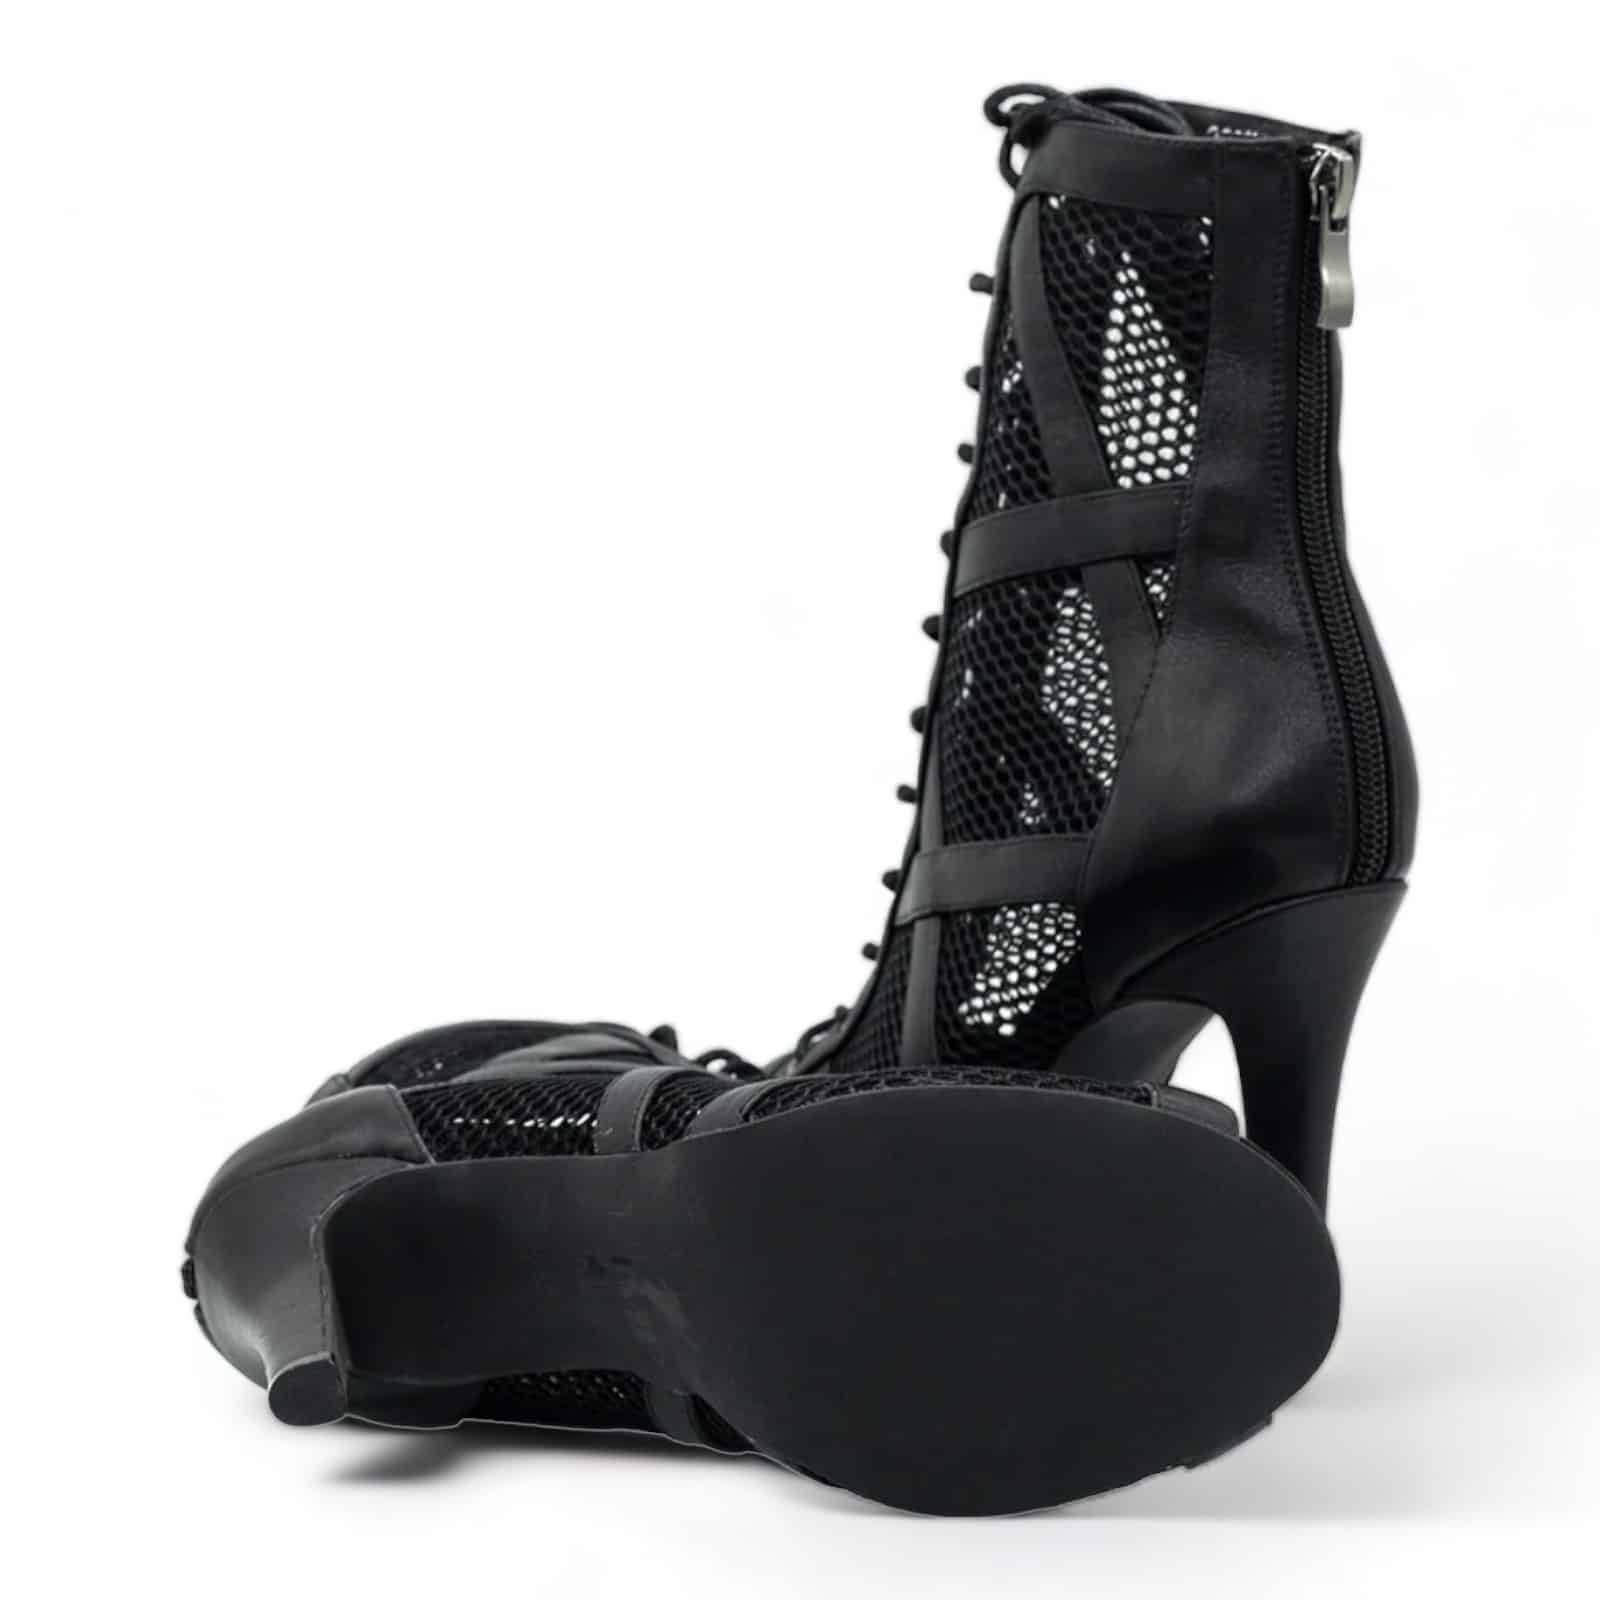 Comfortable boots for dancing in heels